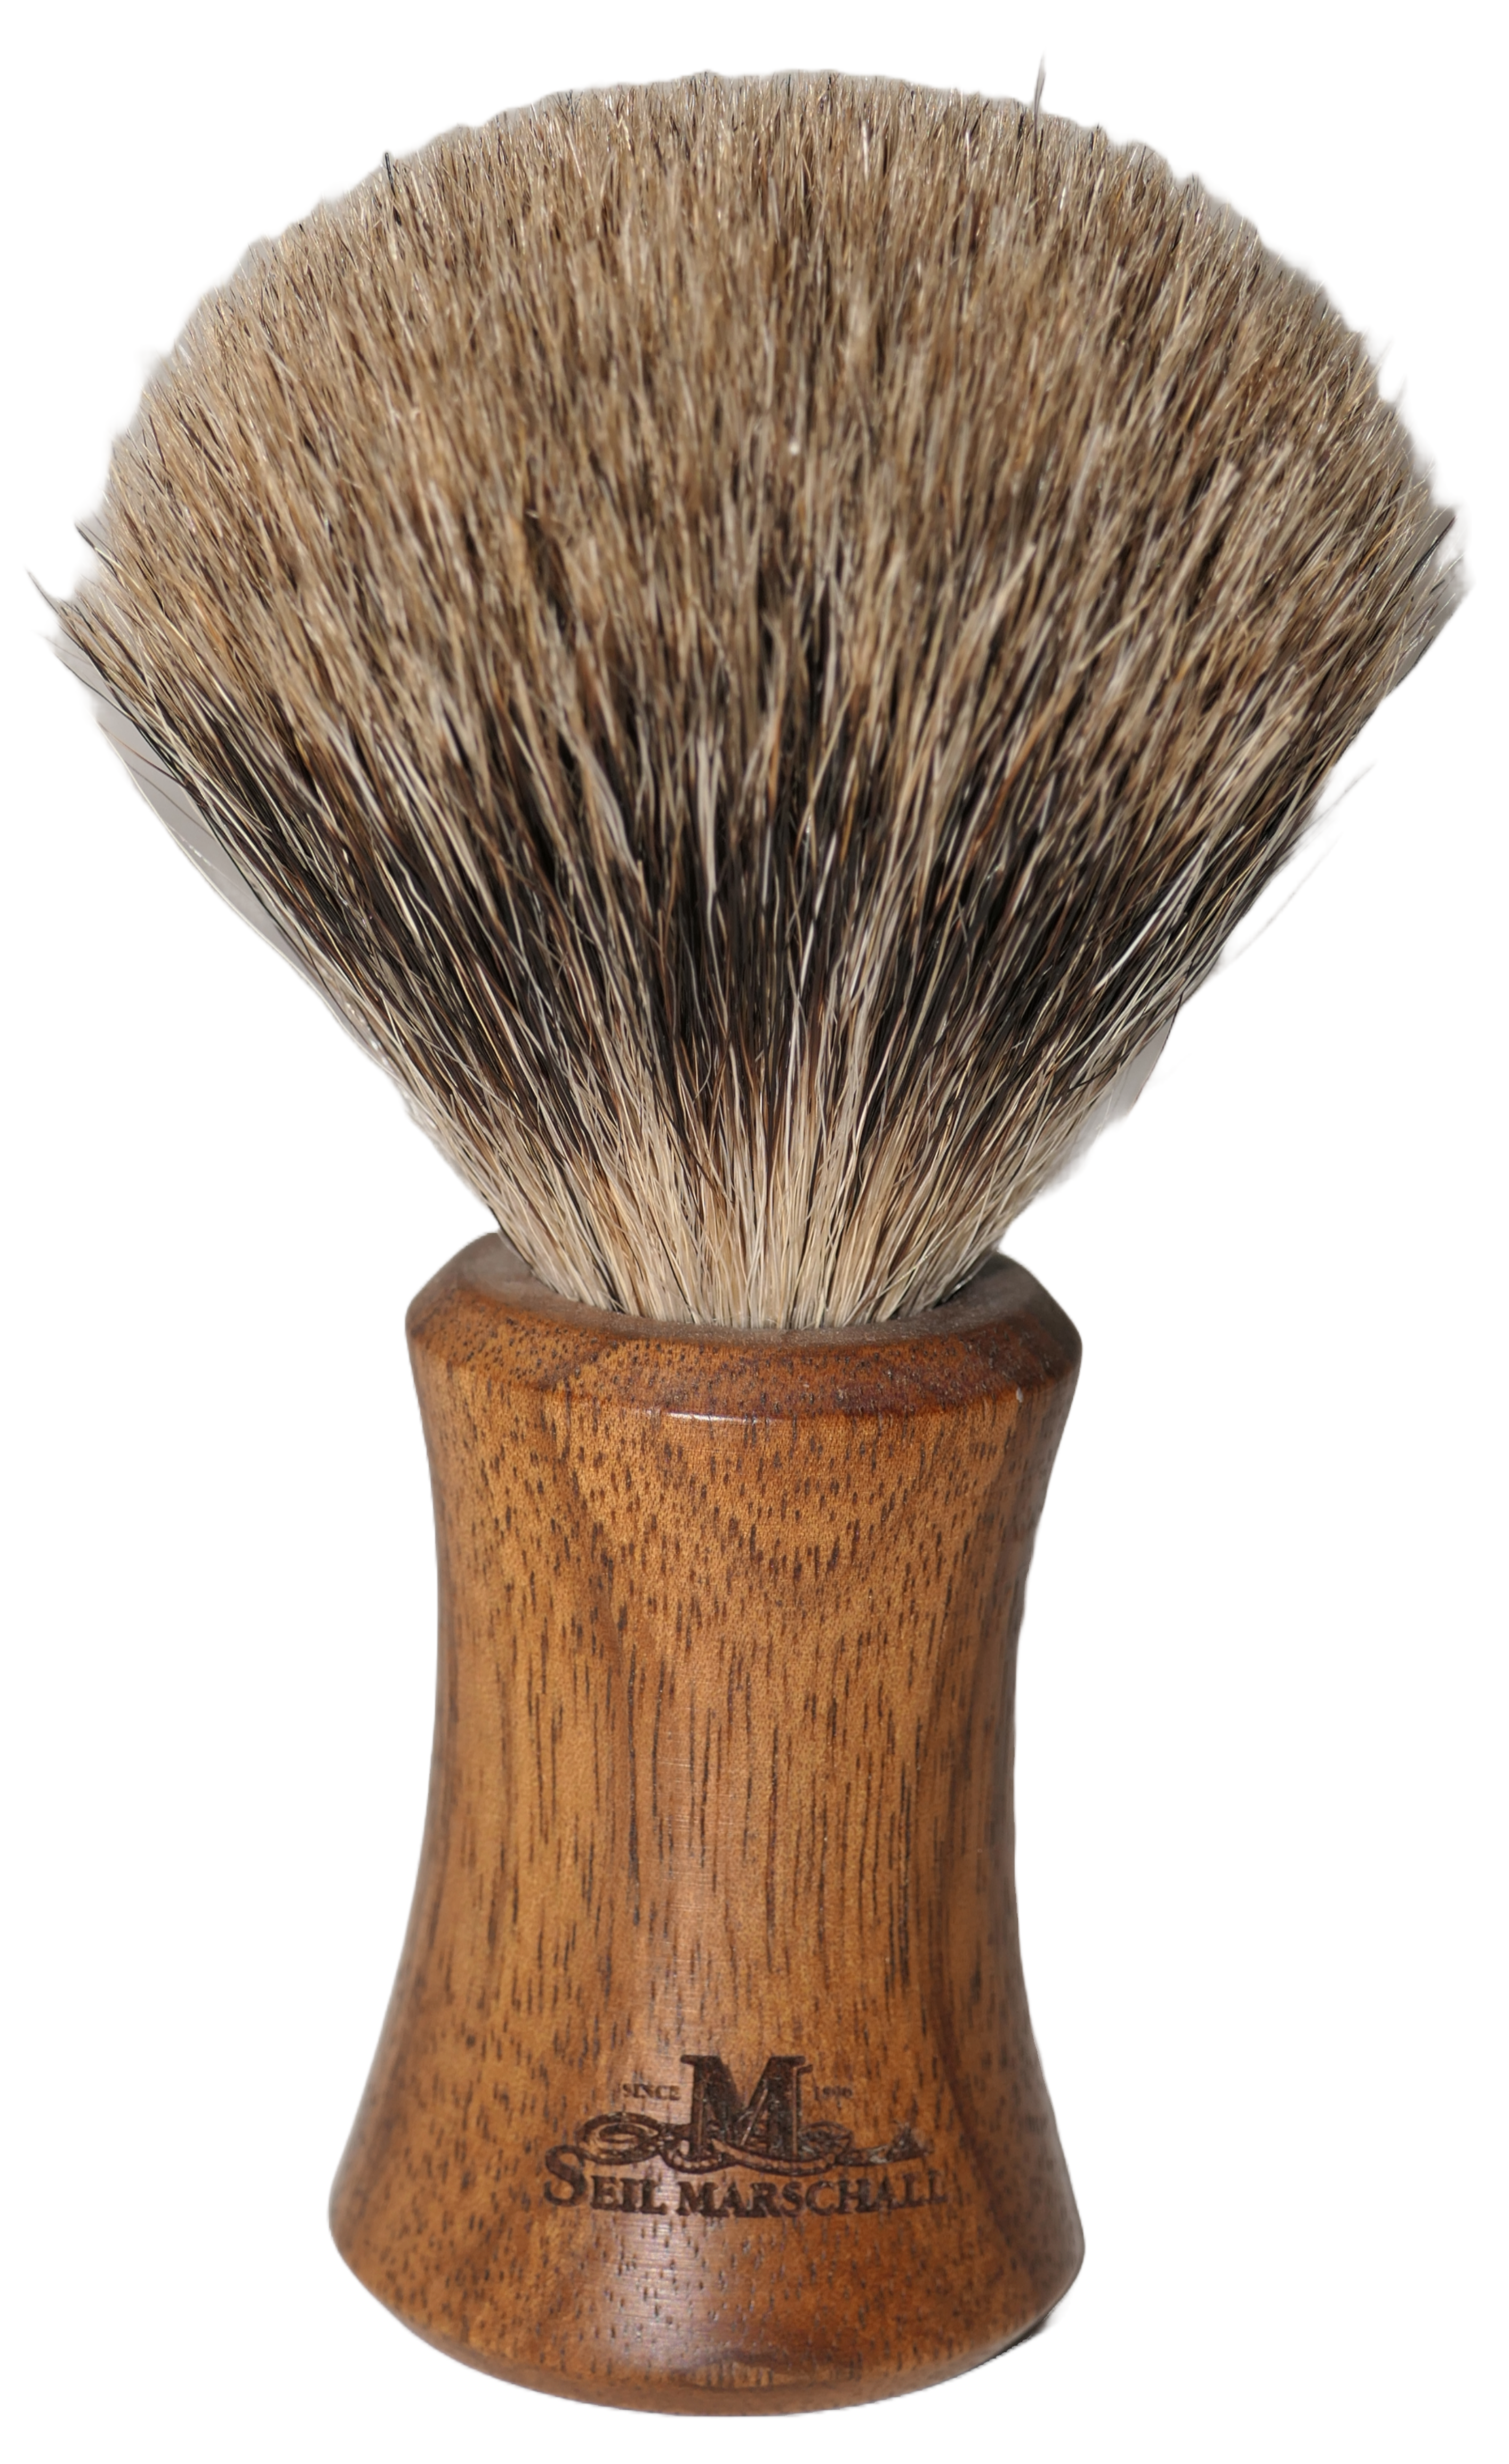 Shaving brush made from oakwood